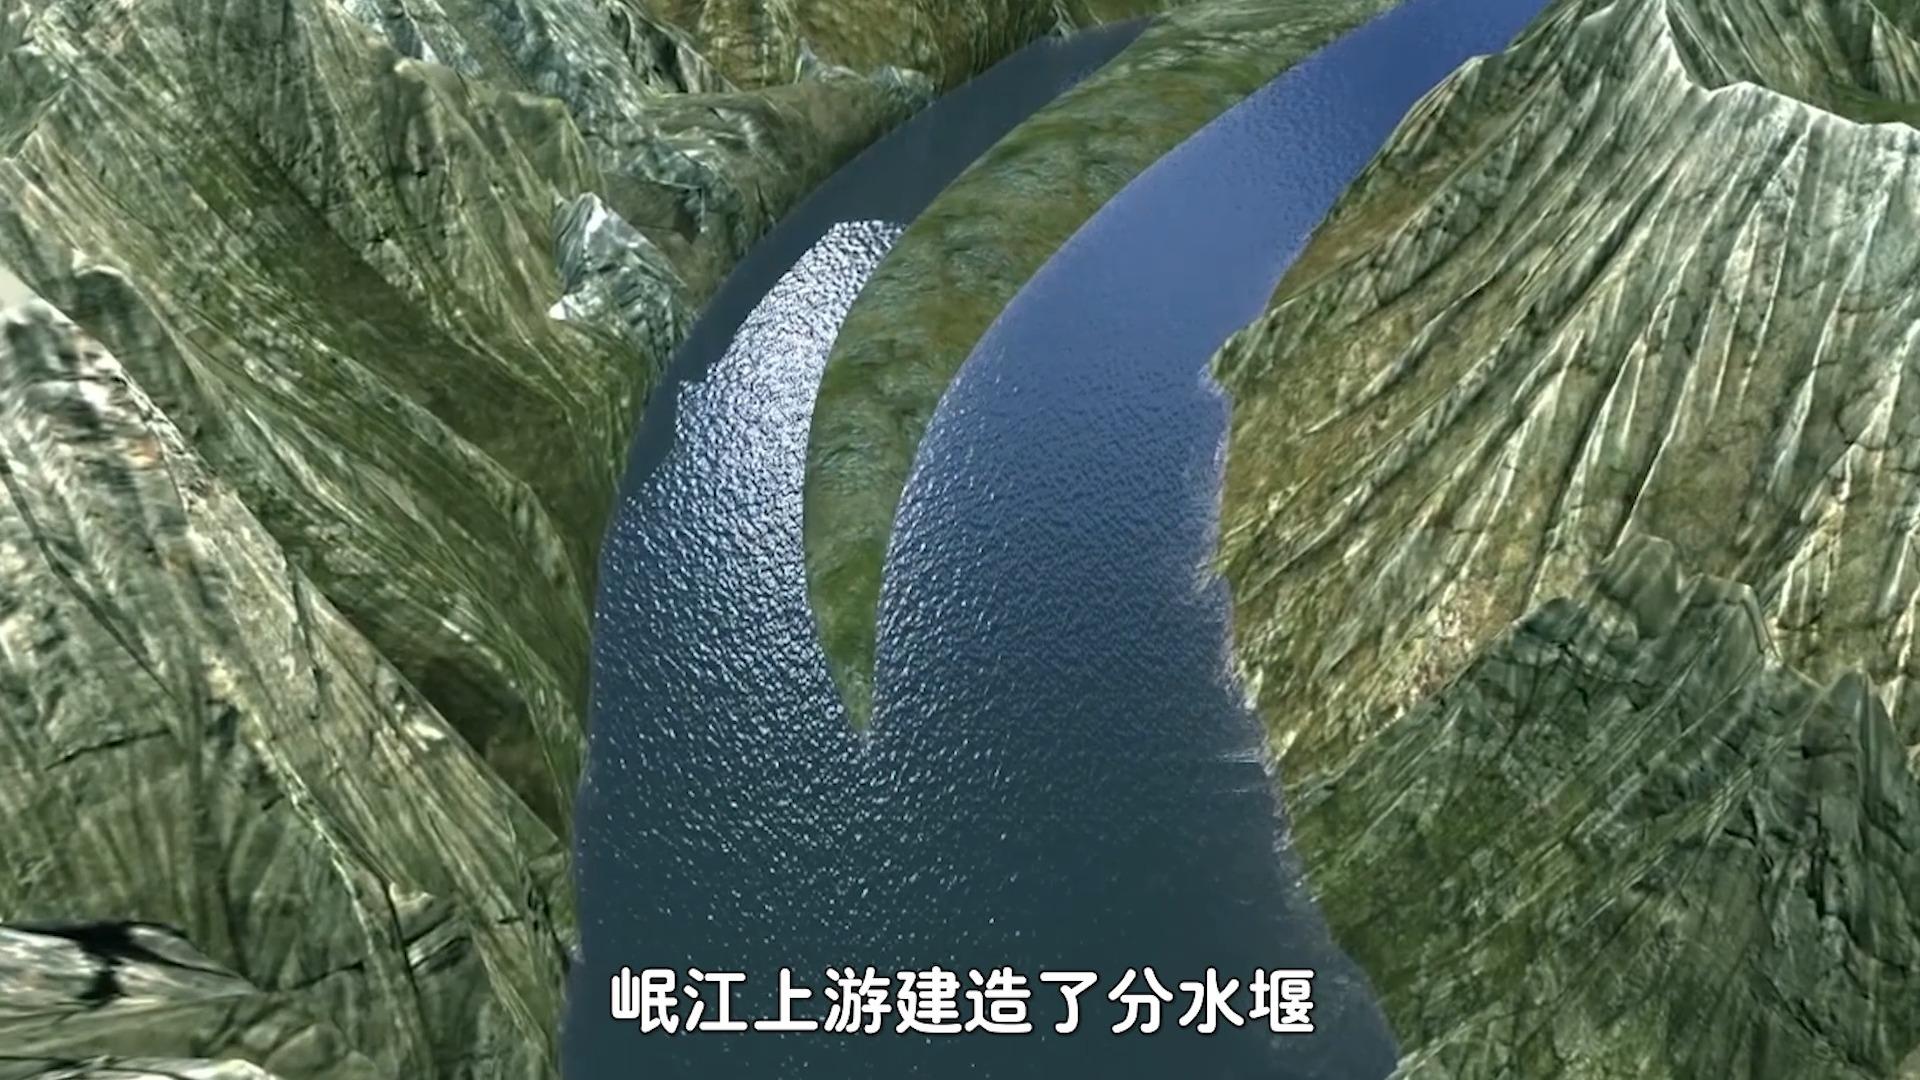 都江堰原理的动画演示图片